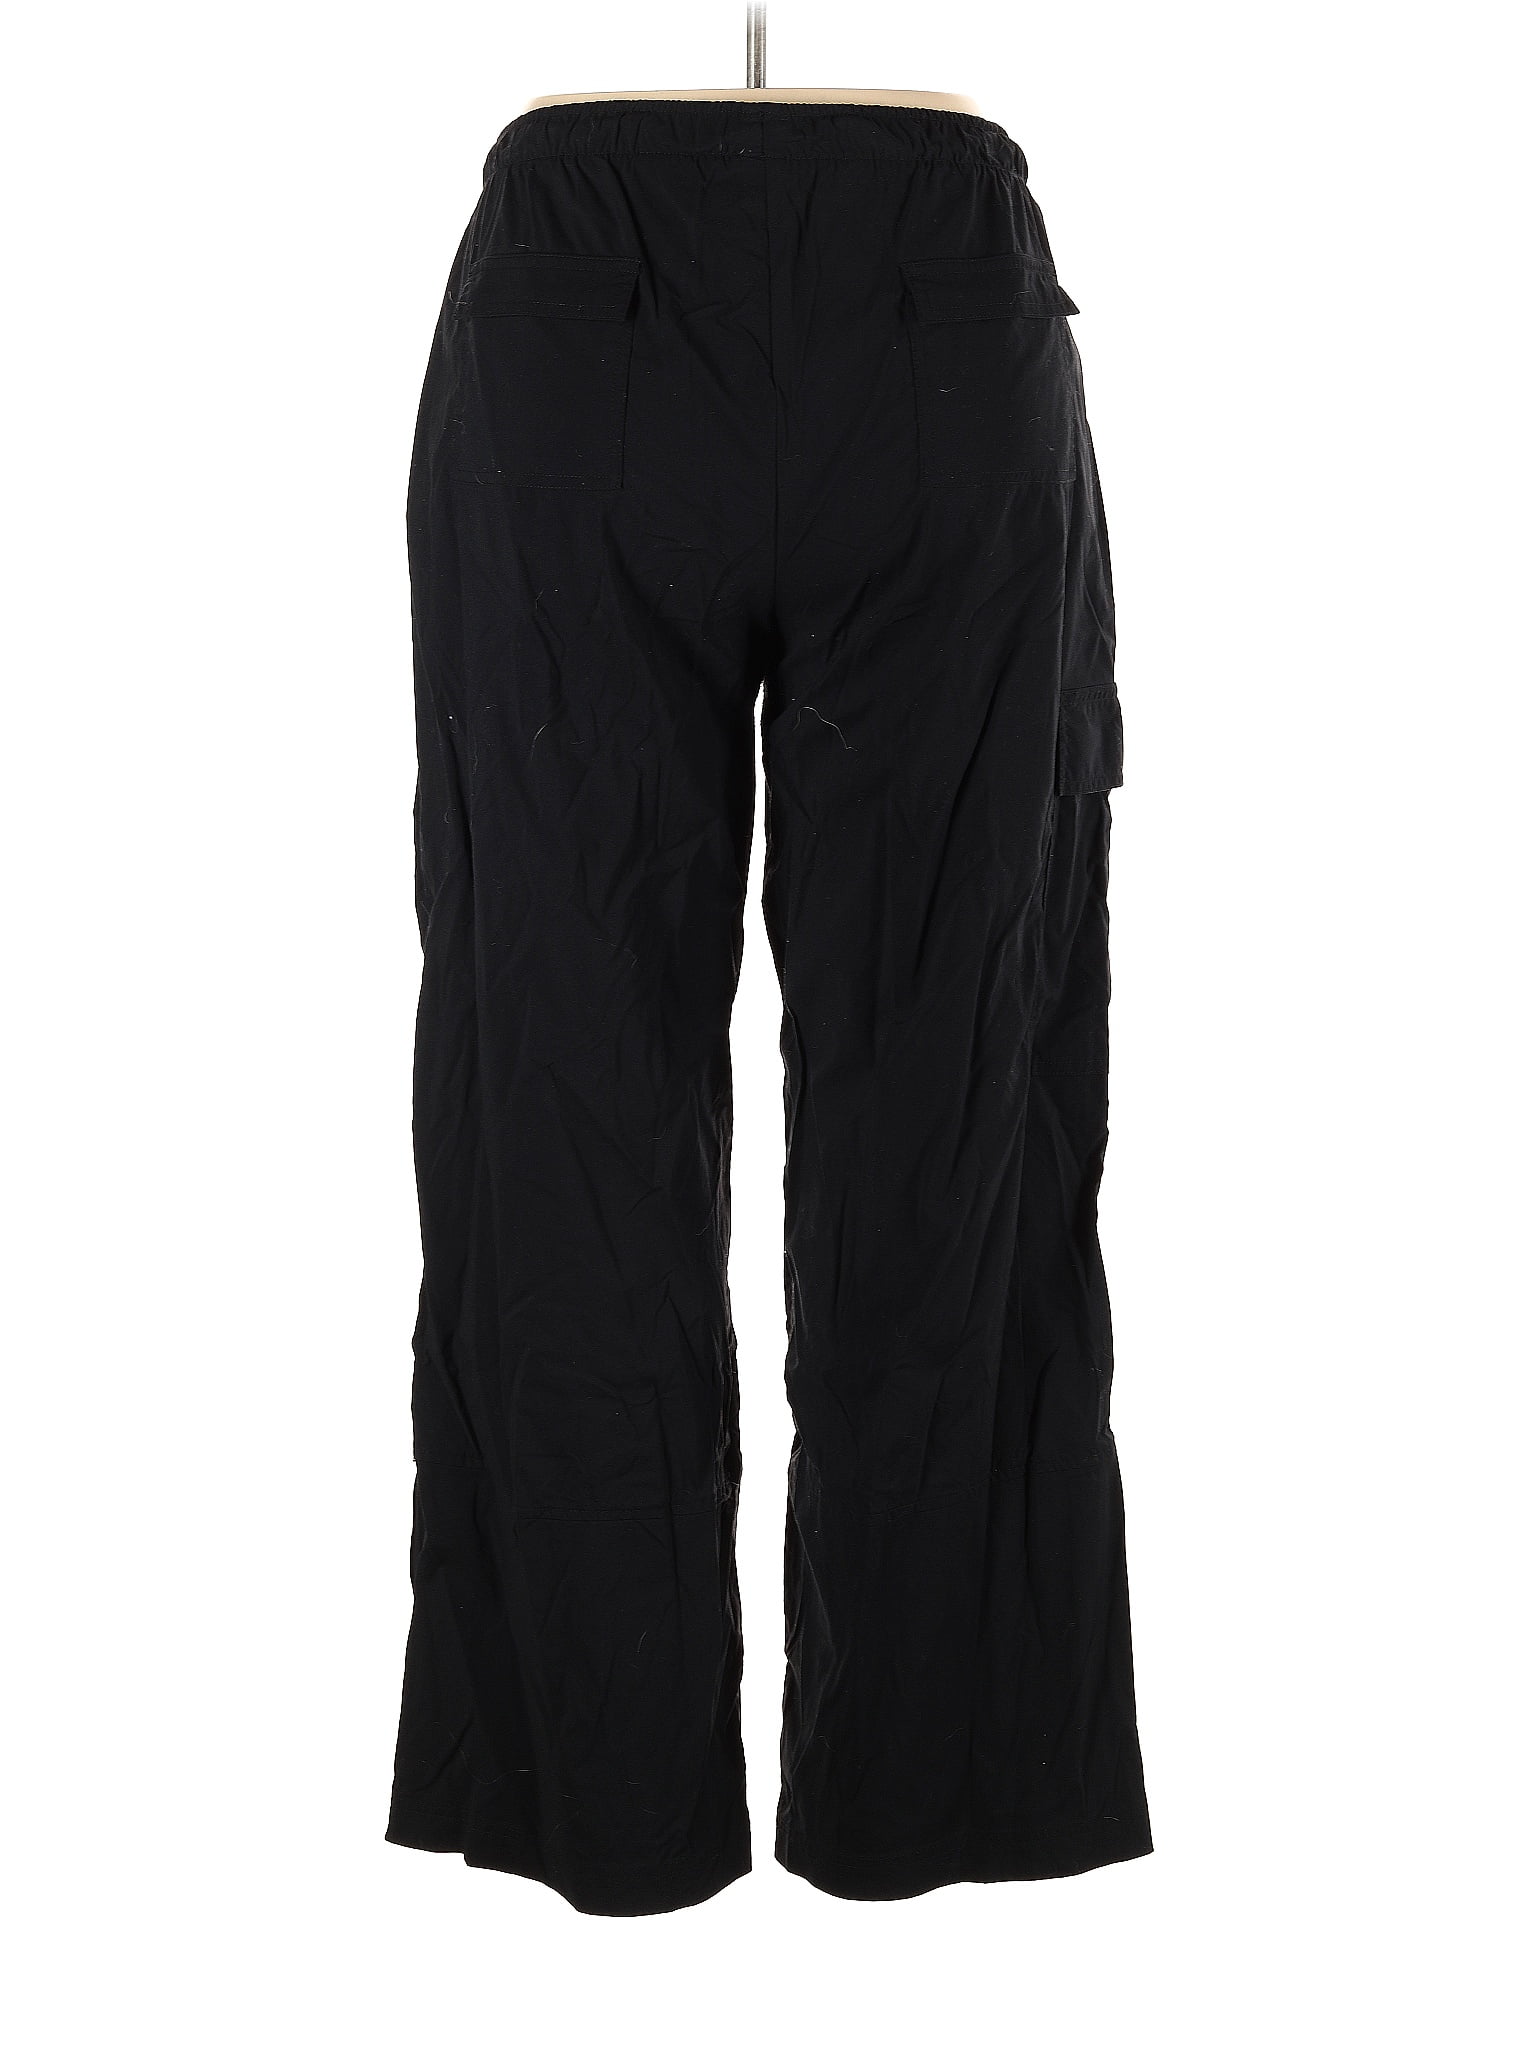 Danskin Black Active Pants Size XL - 55% off